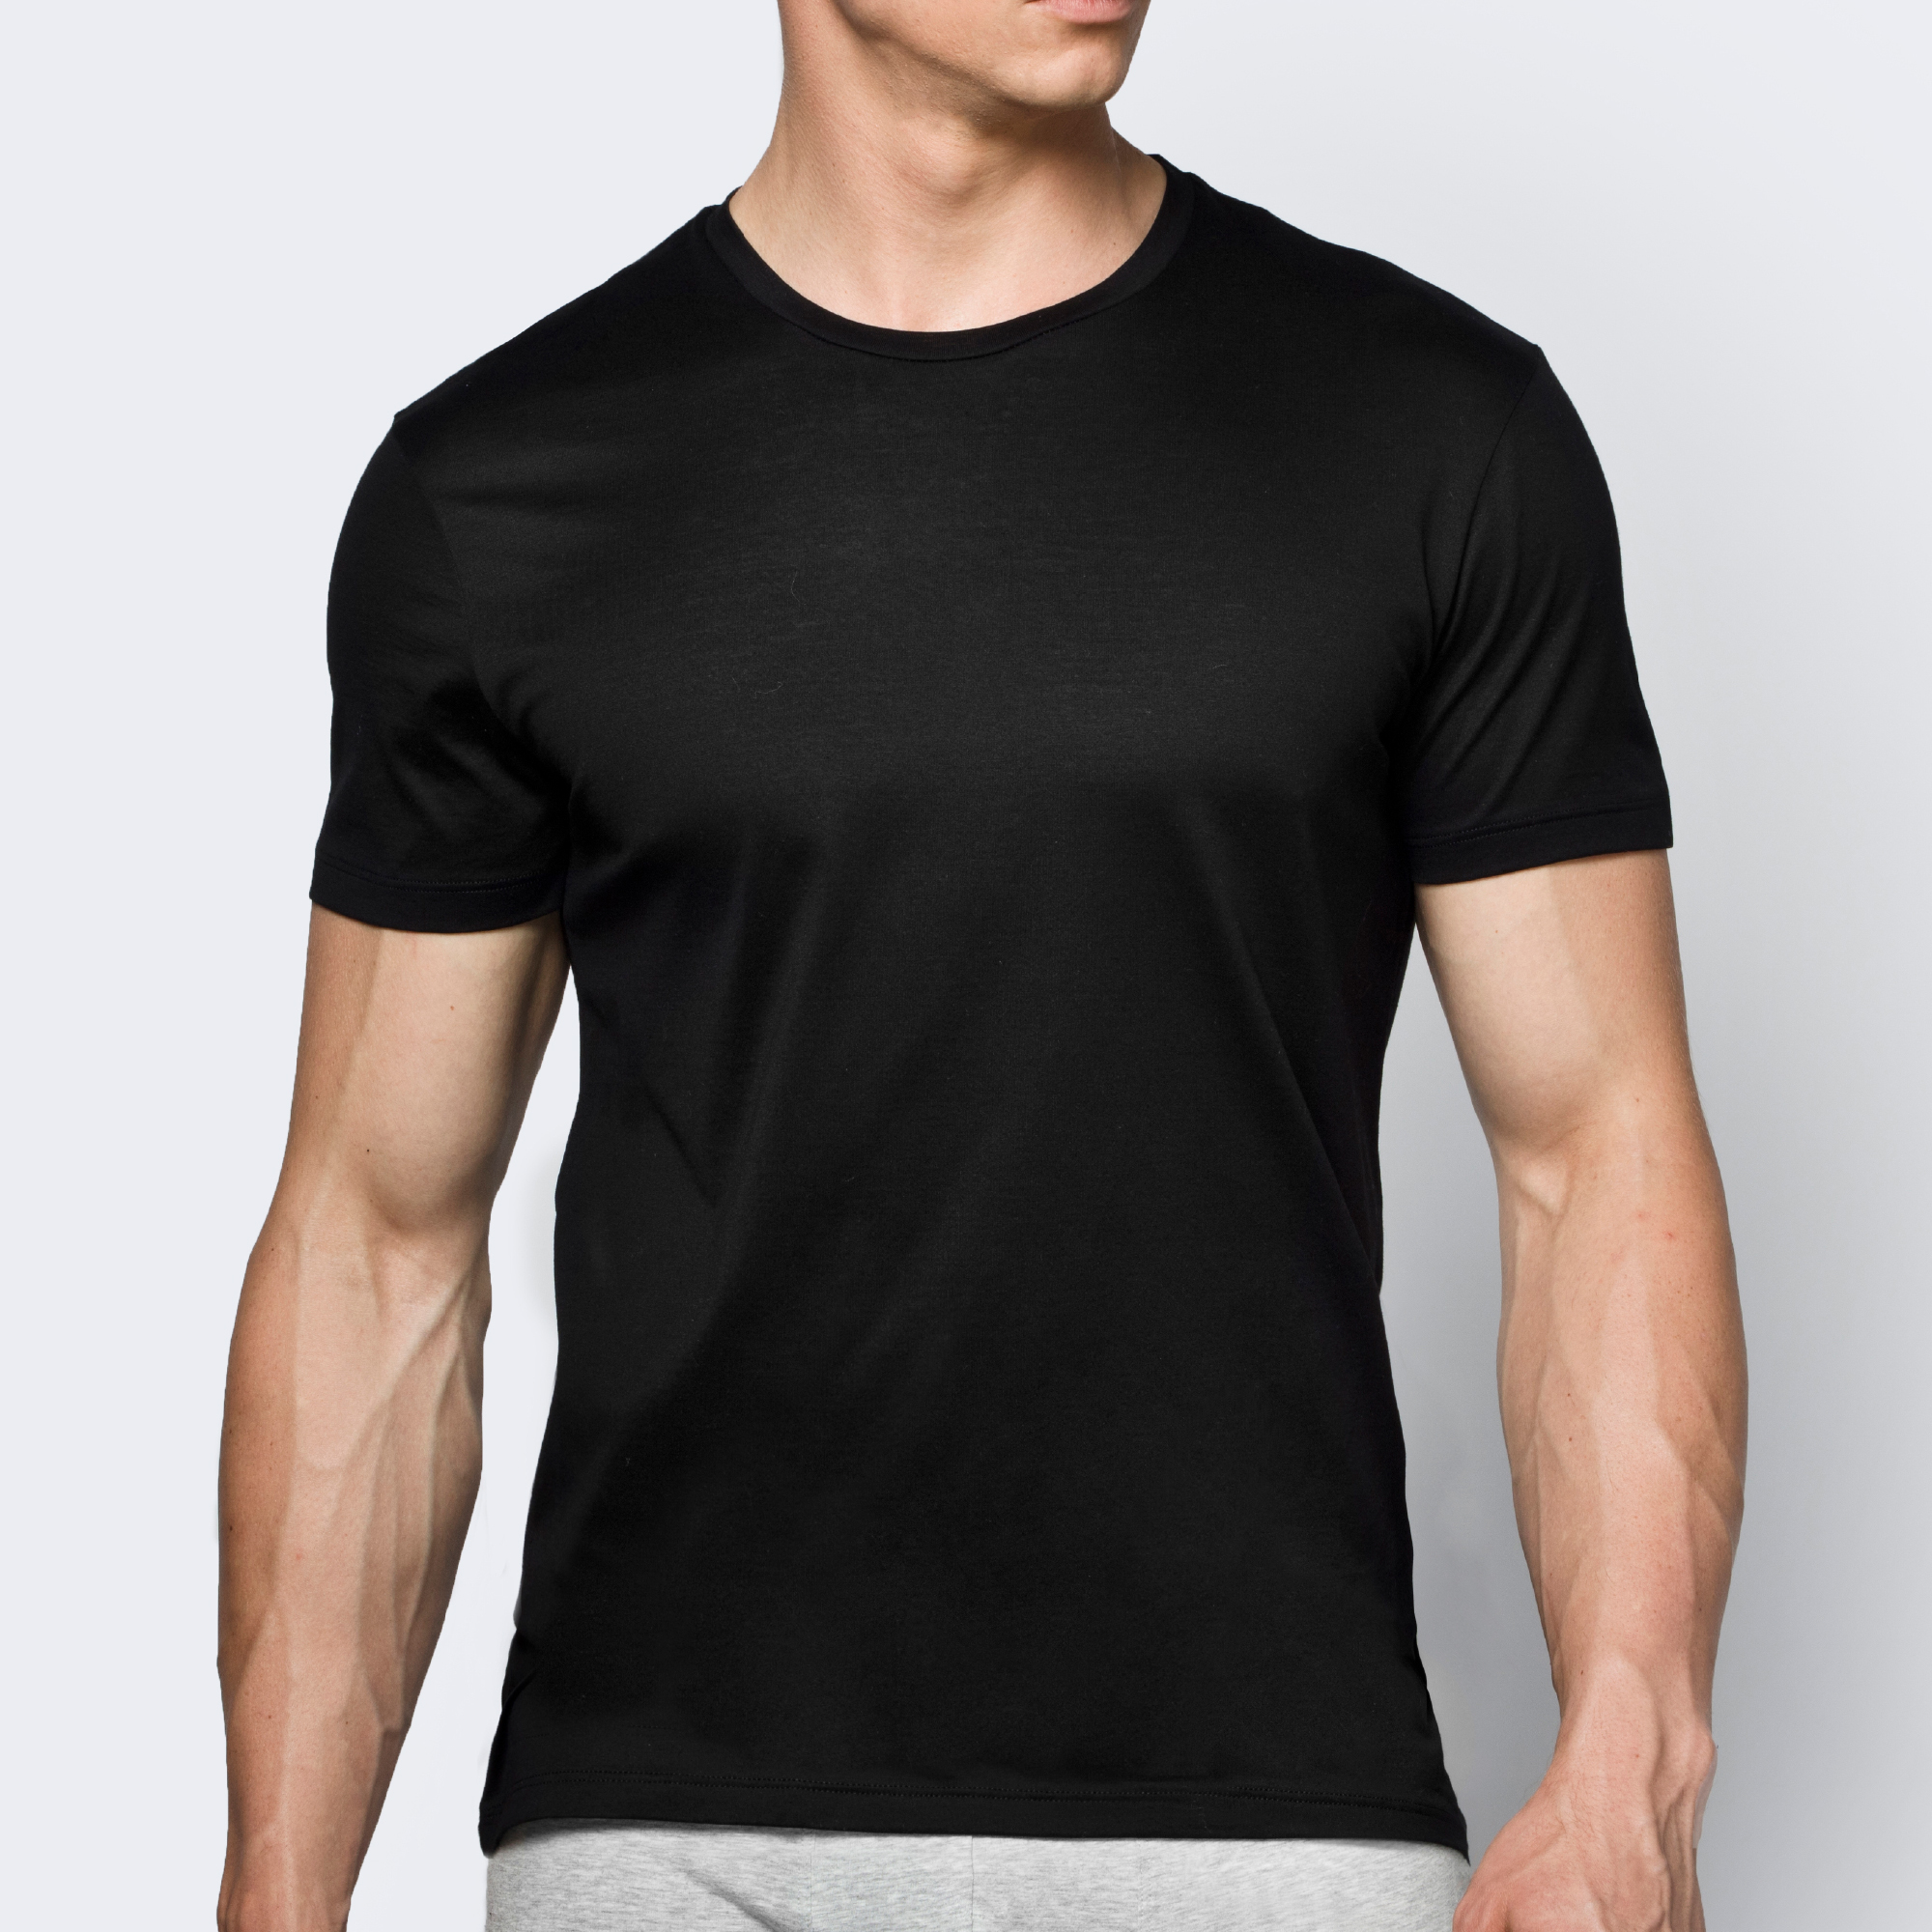 Atlantic футболка BMV-048, Черный*